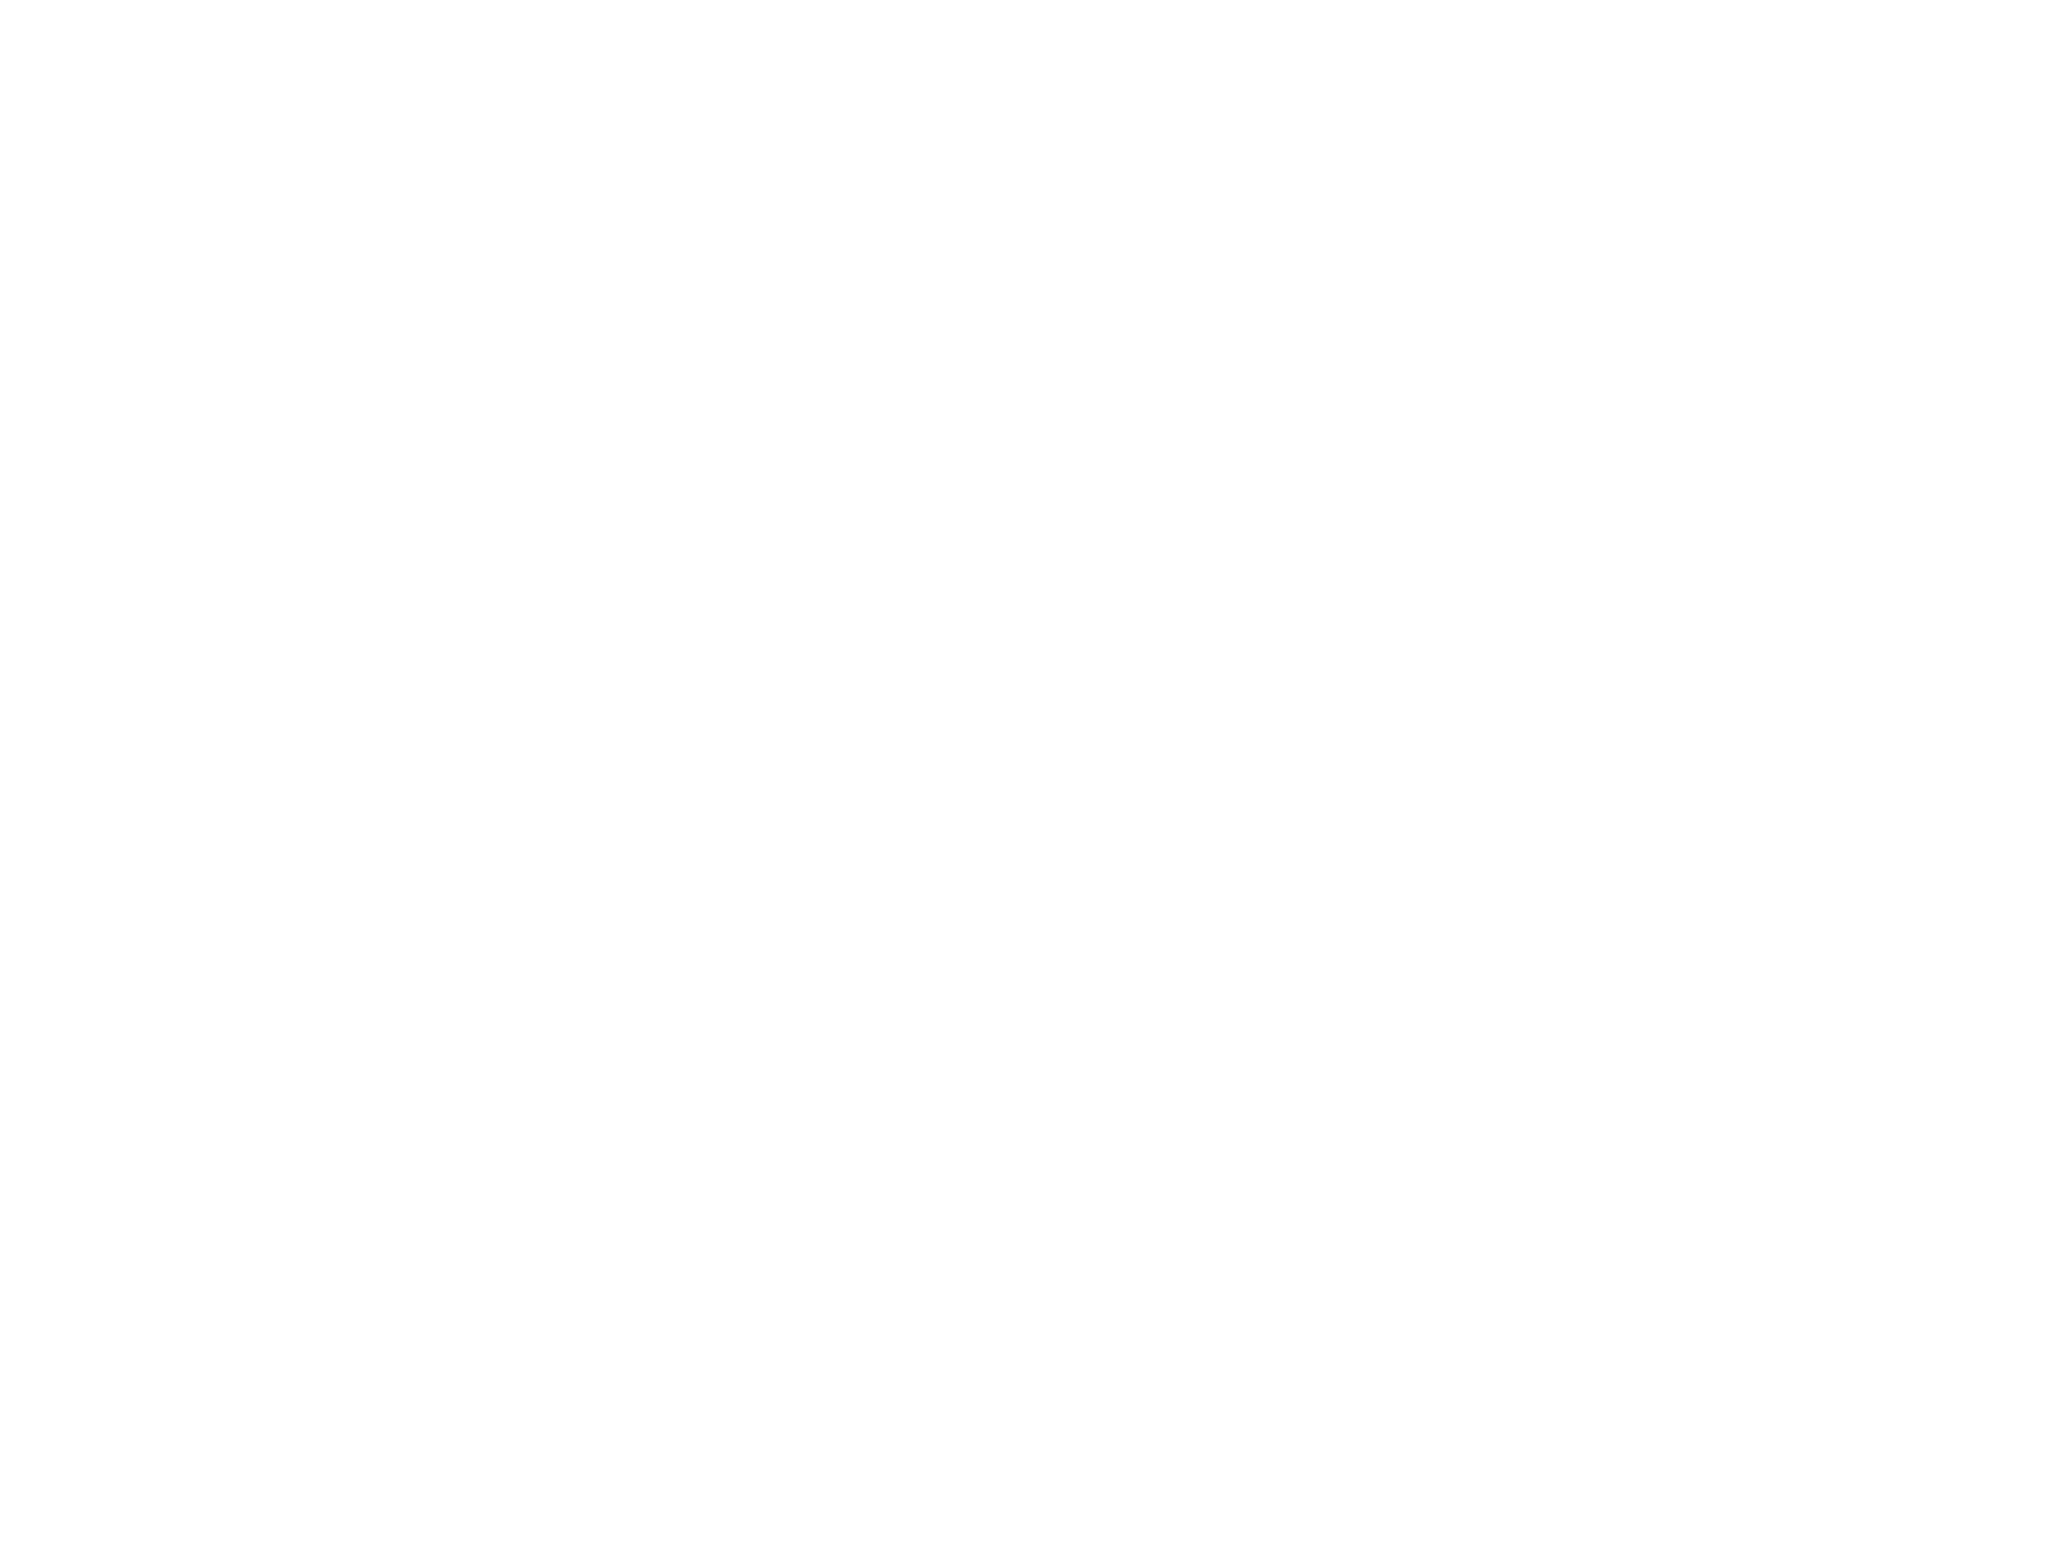 SHOOTO KINGS